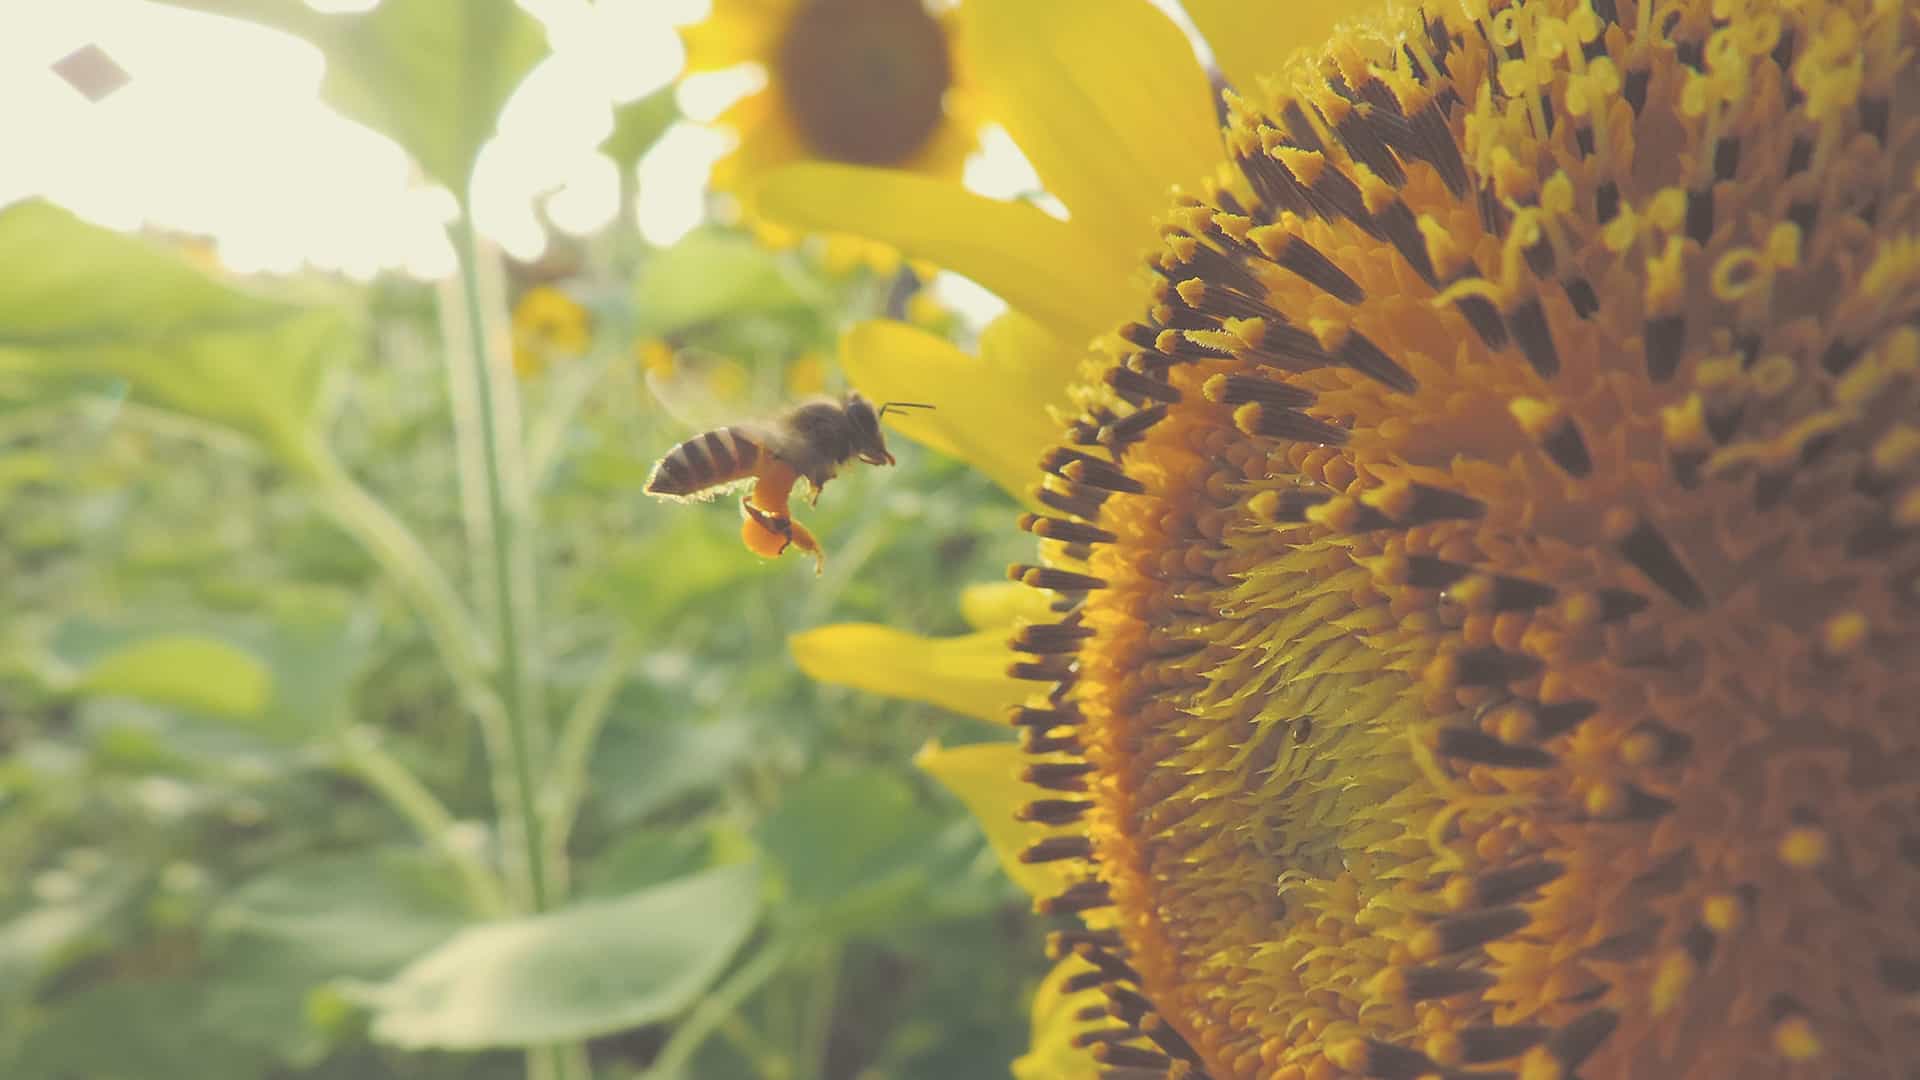 Trate as abelhas como animais de estimação